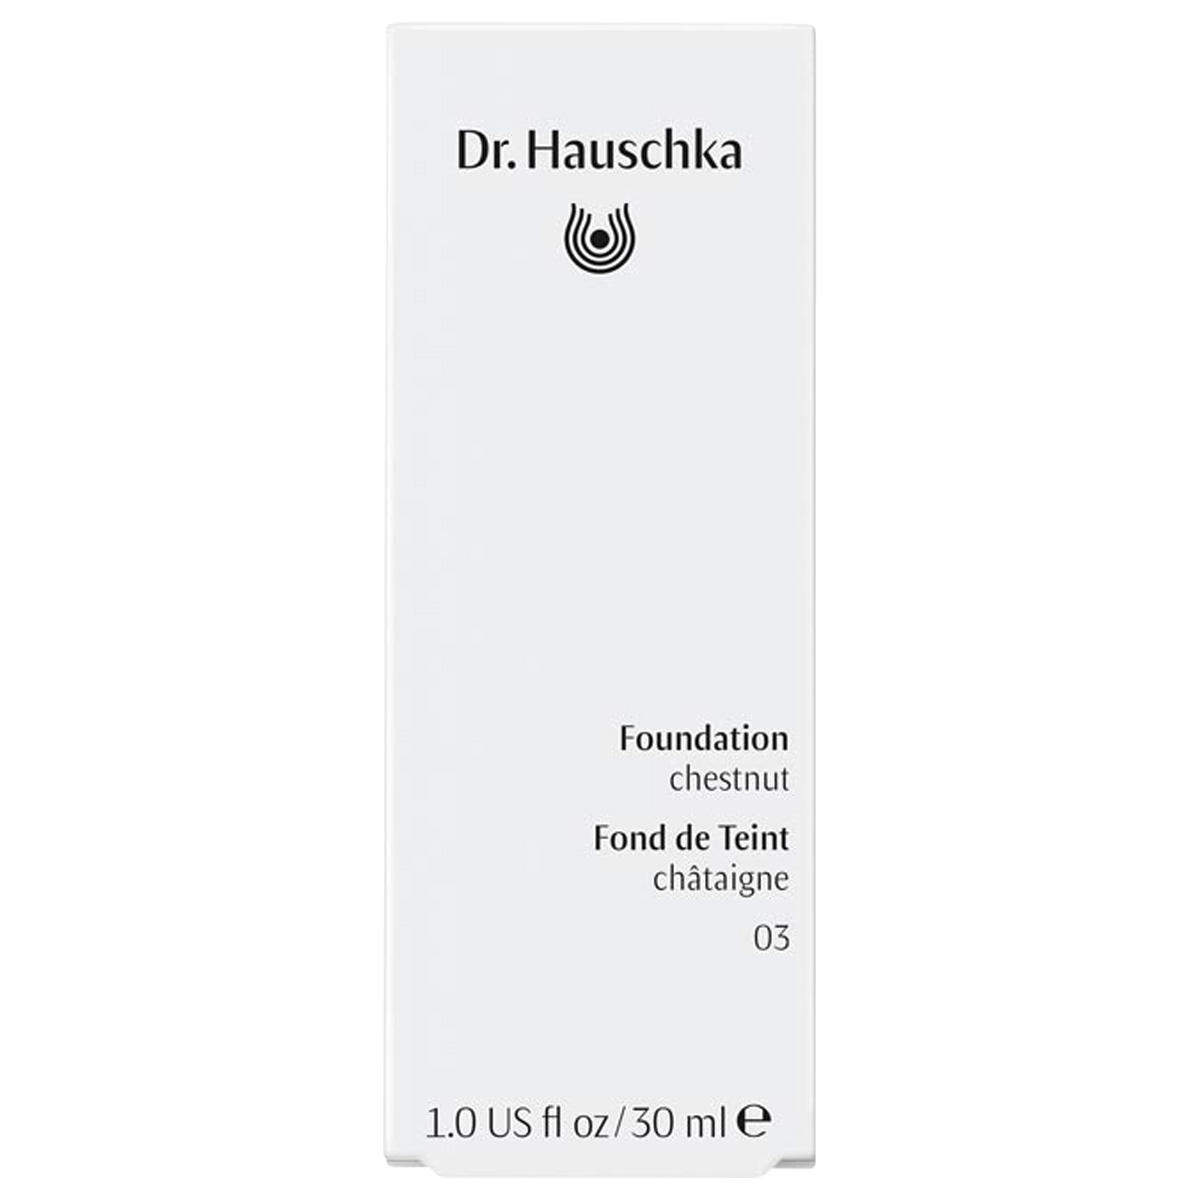 Dr. Hauschka Foundation 03 kastanje, inhoud 30 ml - 2